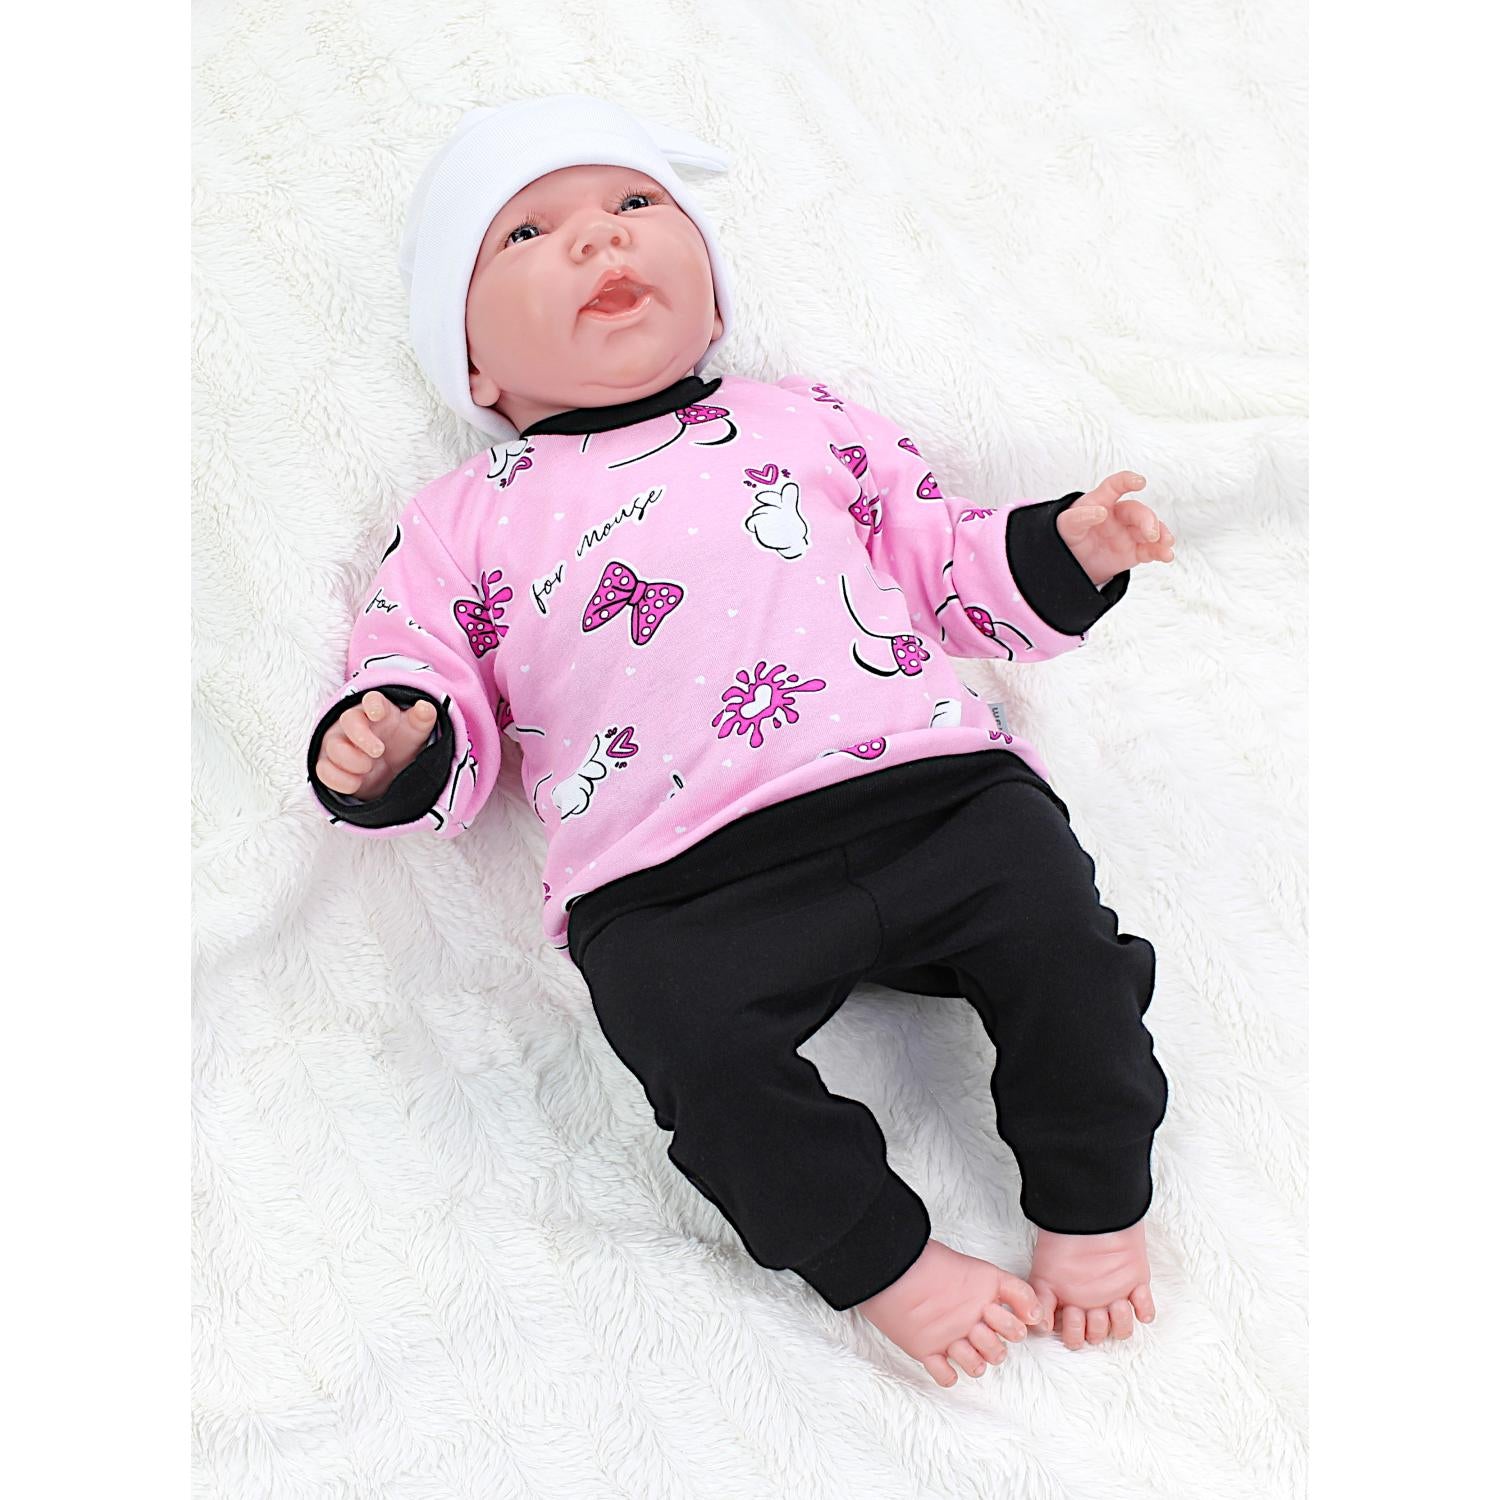 Baby Kleidungsoutfit mit Aufdruck (2-teilig)